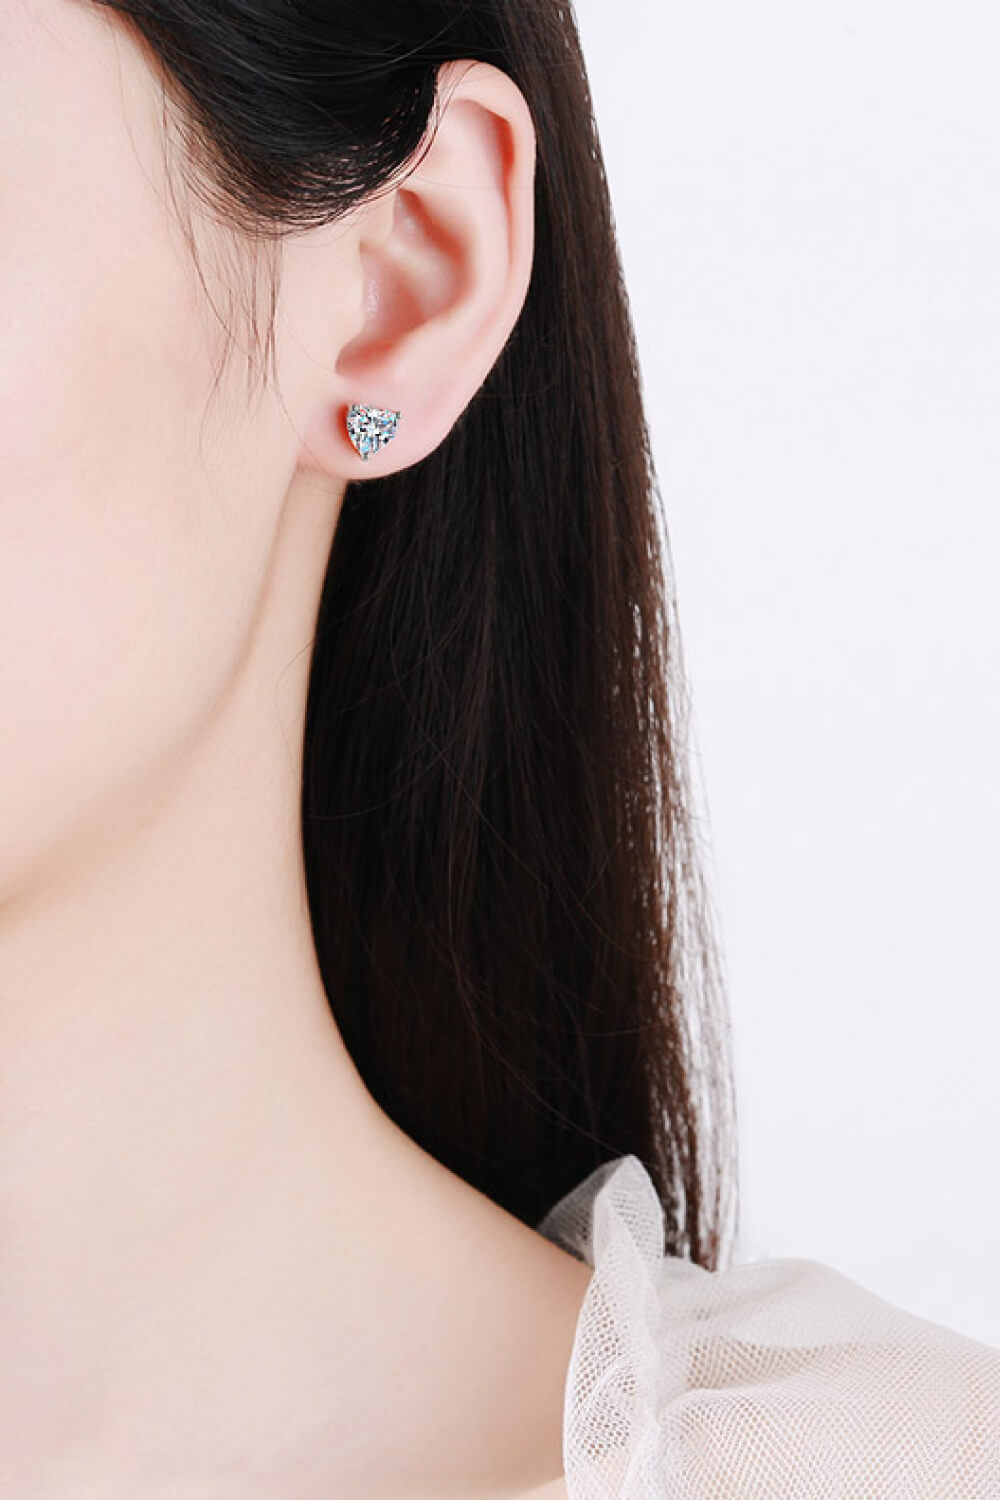 2 Carat Moissanite Heart-Shaped Stud Earrings Trendsi